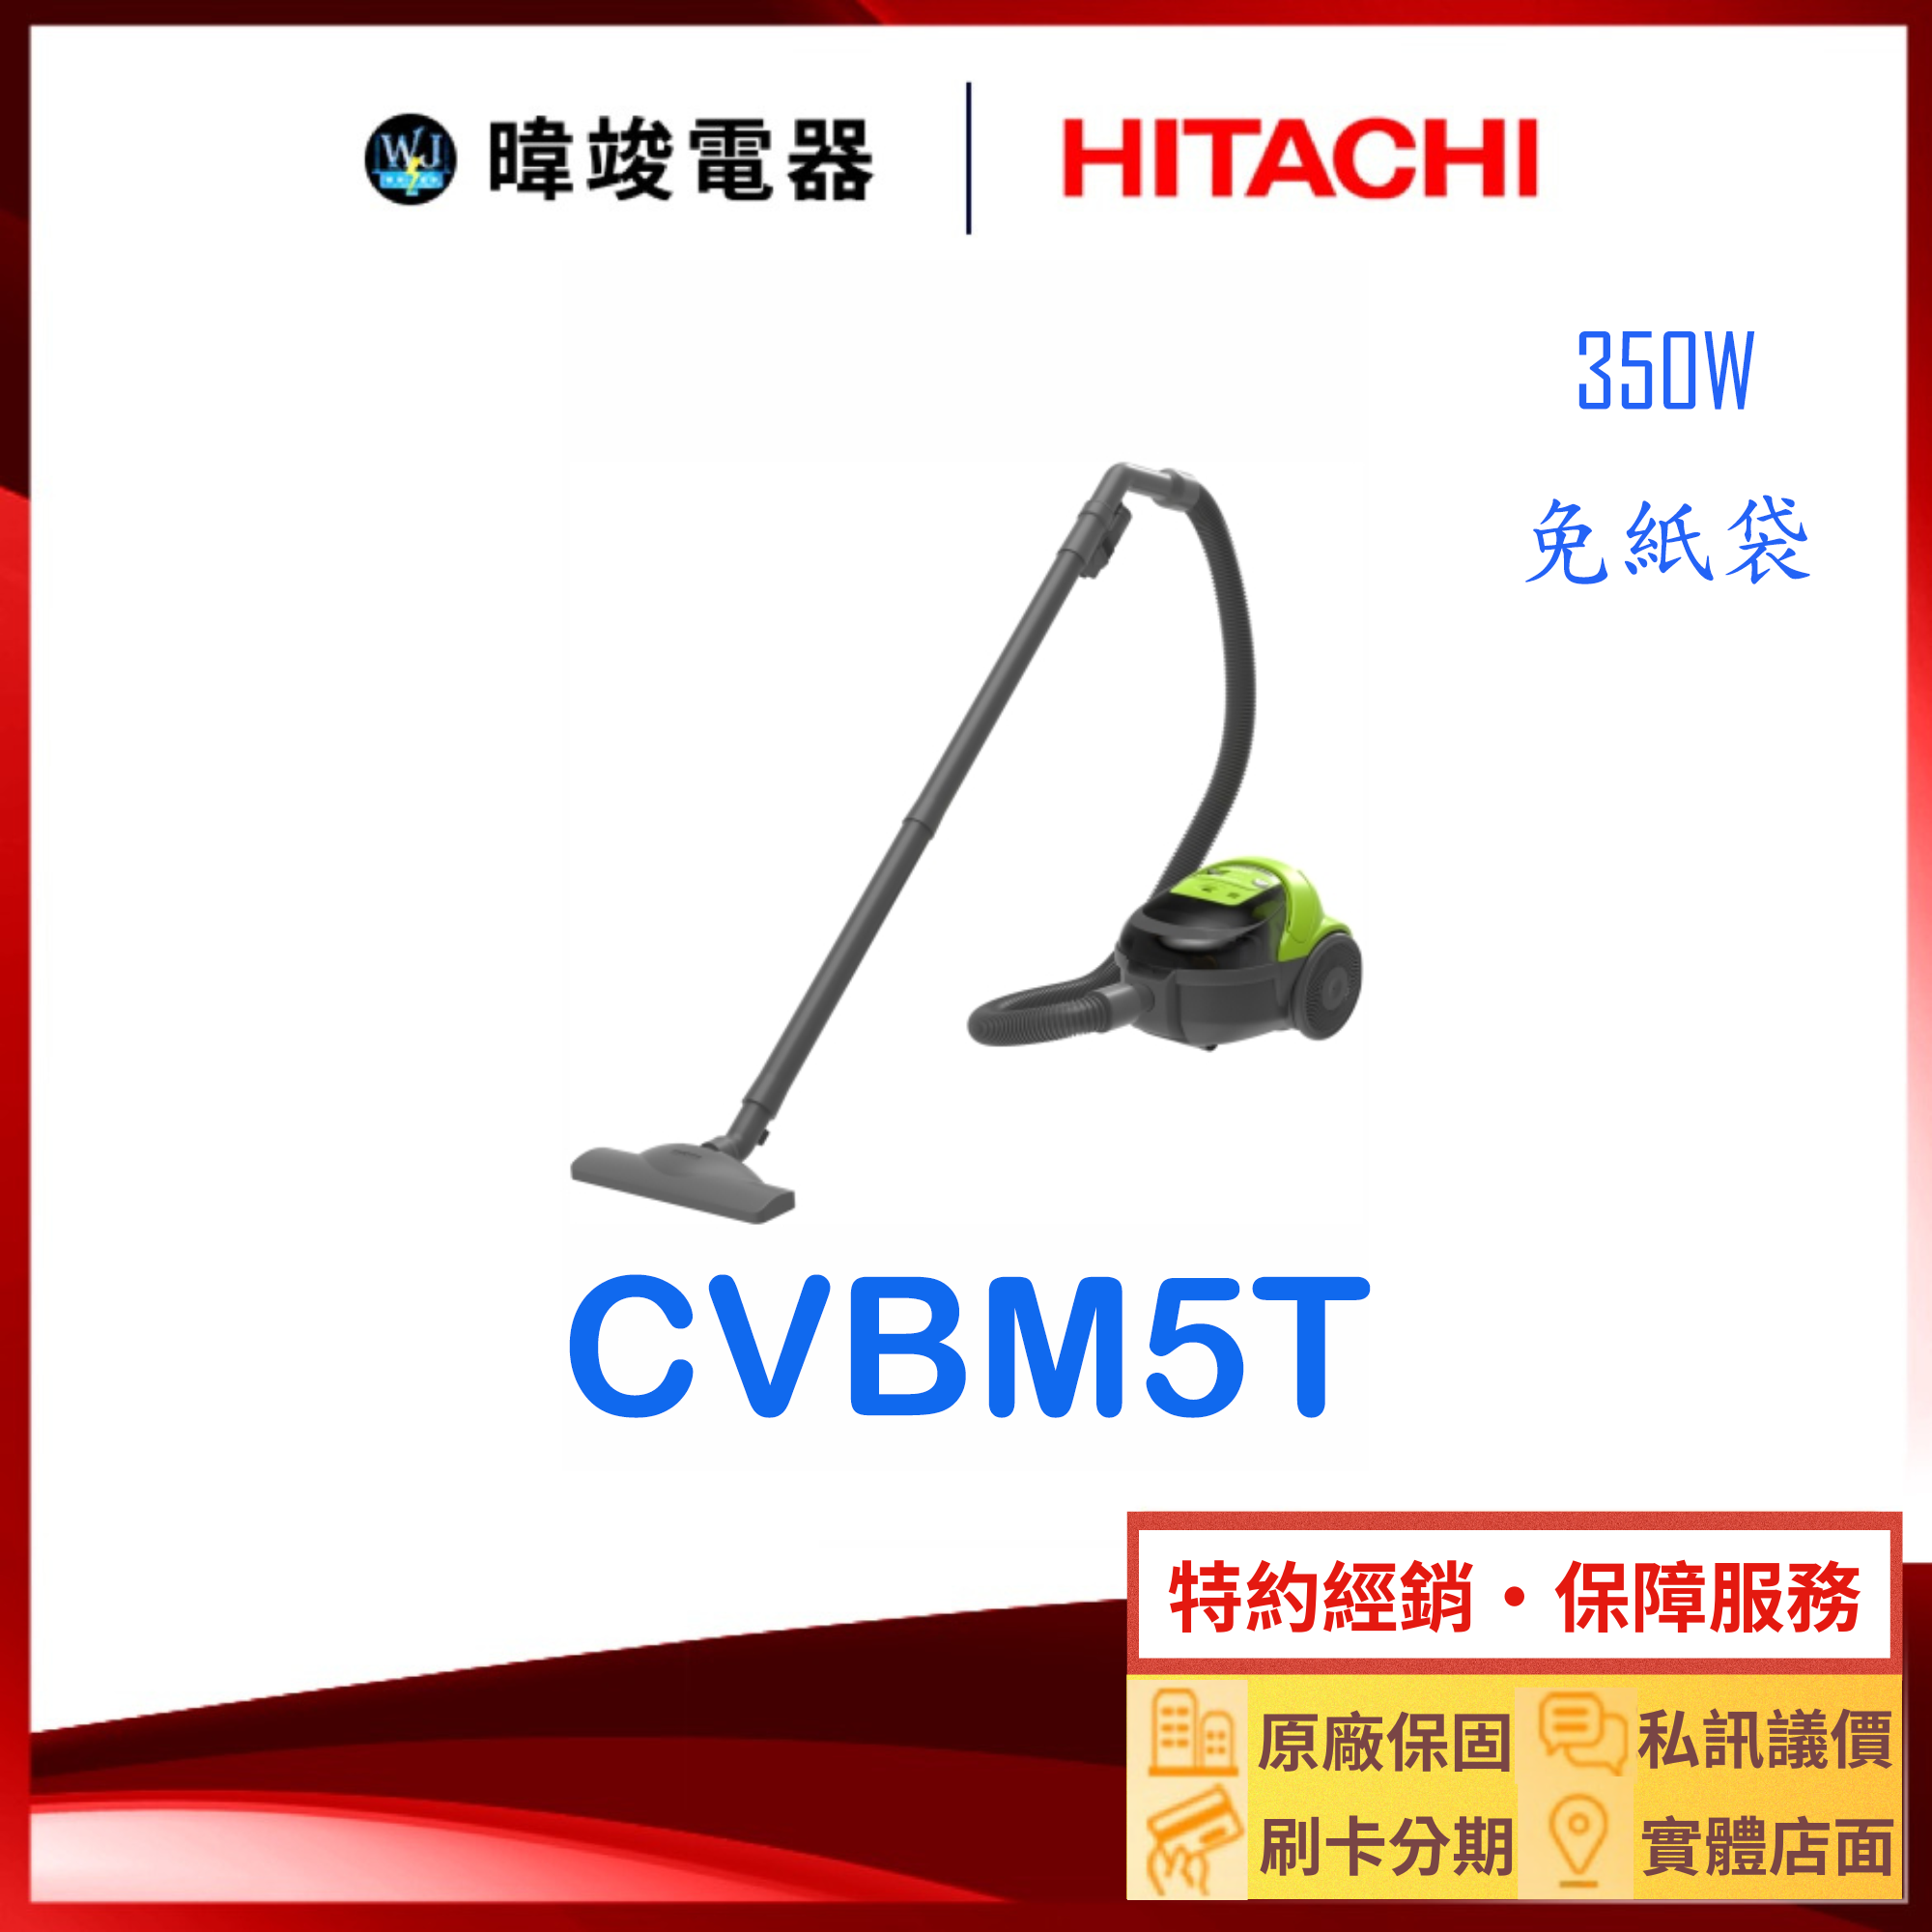 【暐竣電器】HITACHI 日立 CV-BM5T 免紙袋型吸塵器 CVBM5T 吸塵器 另CVSK11T